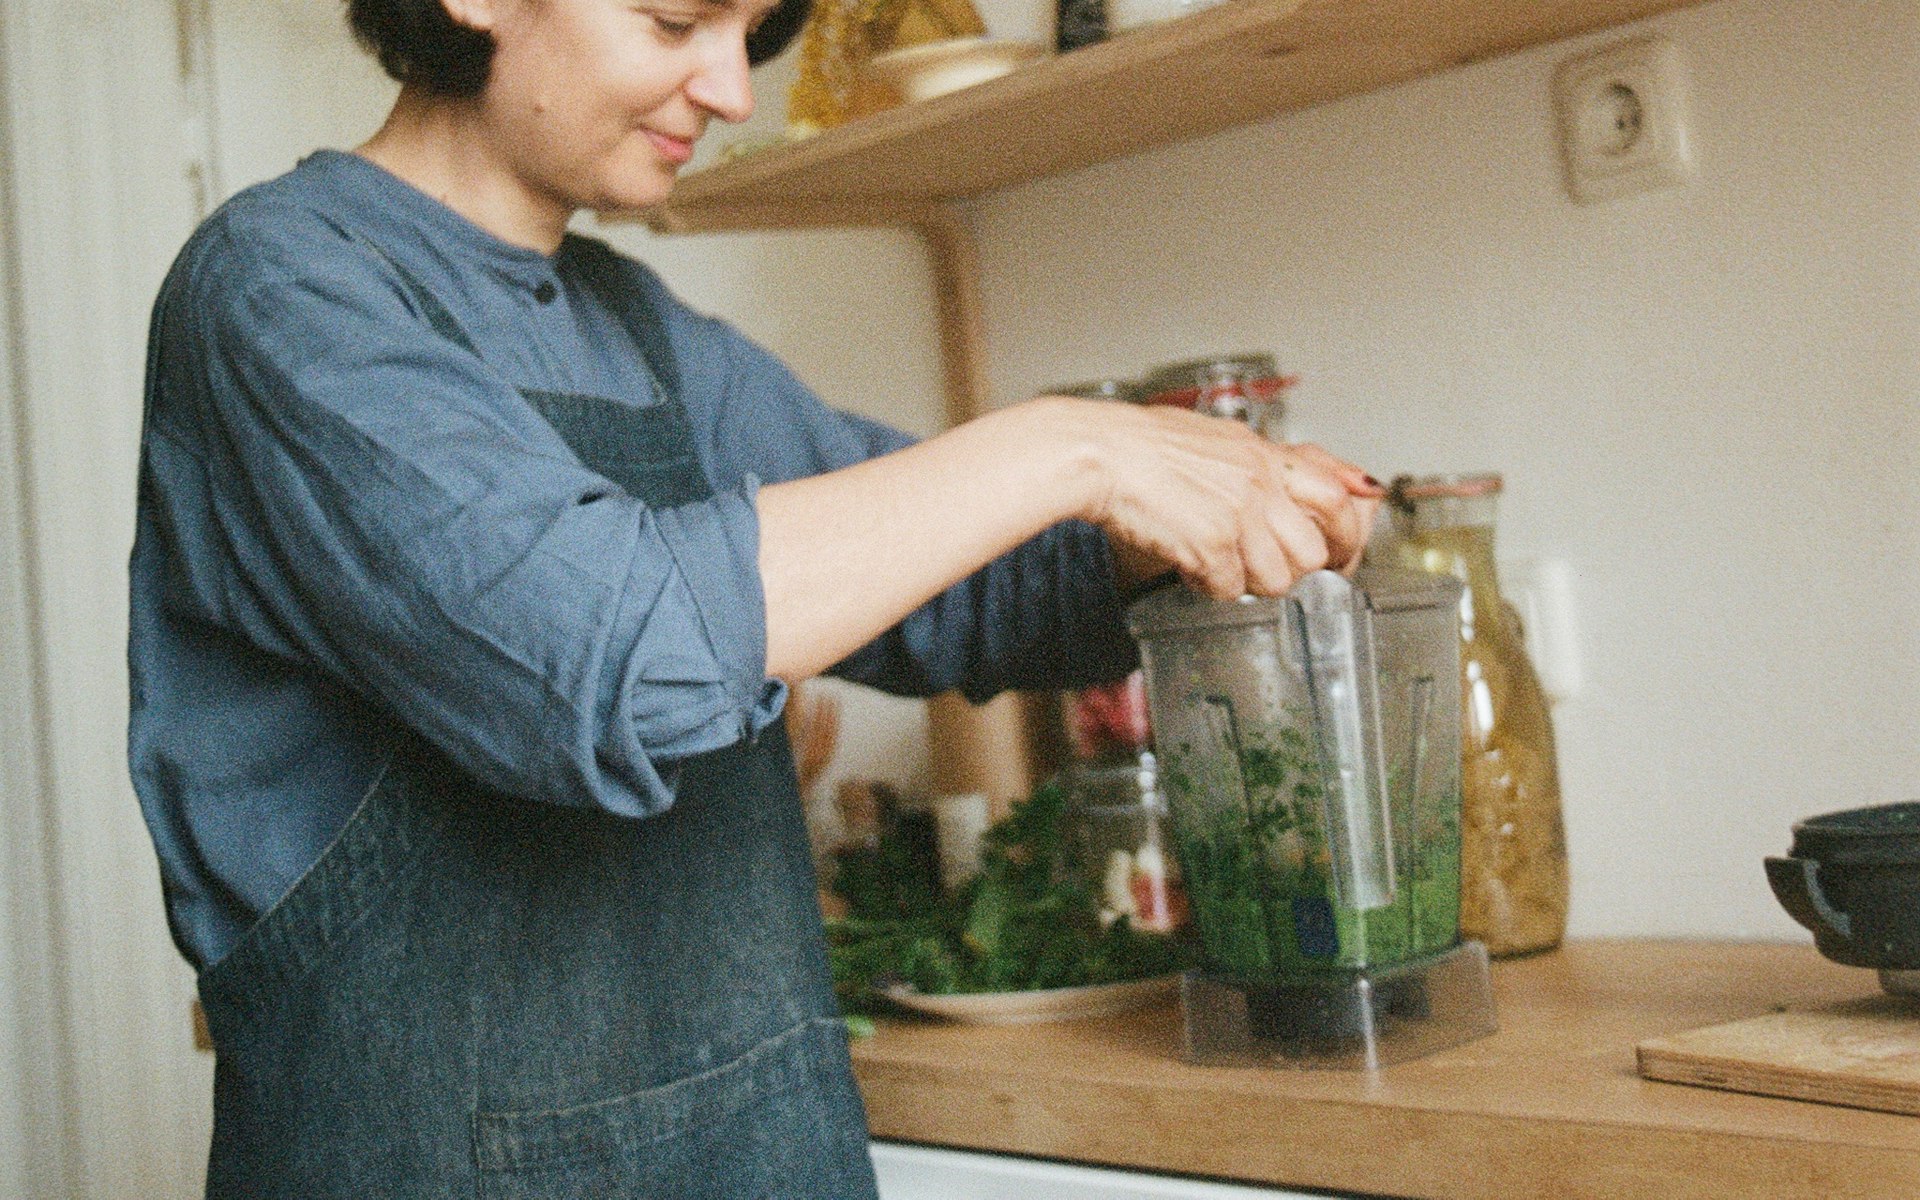 Frau befüllt Mixer in Küche